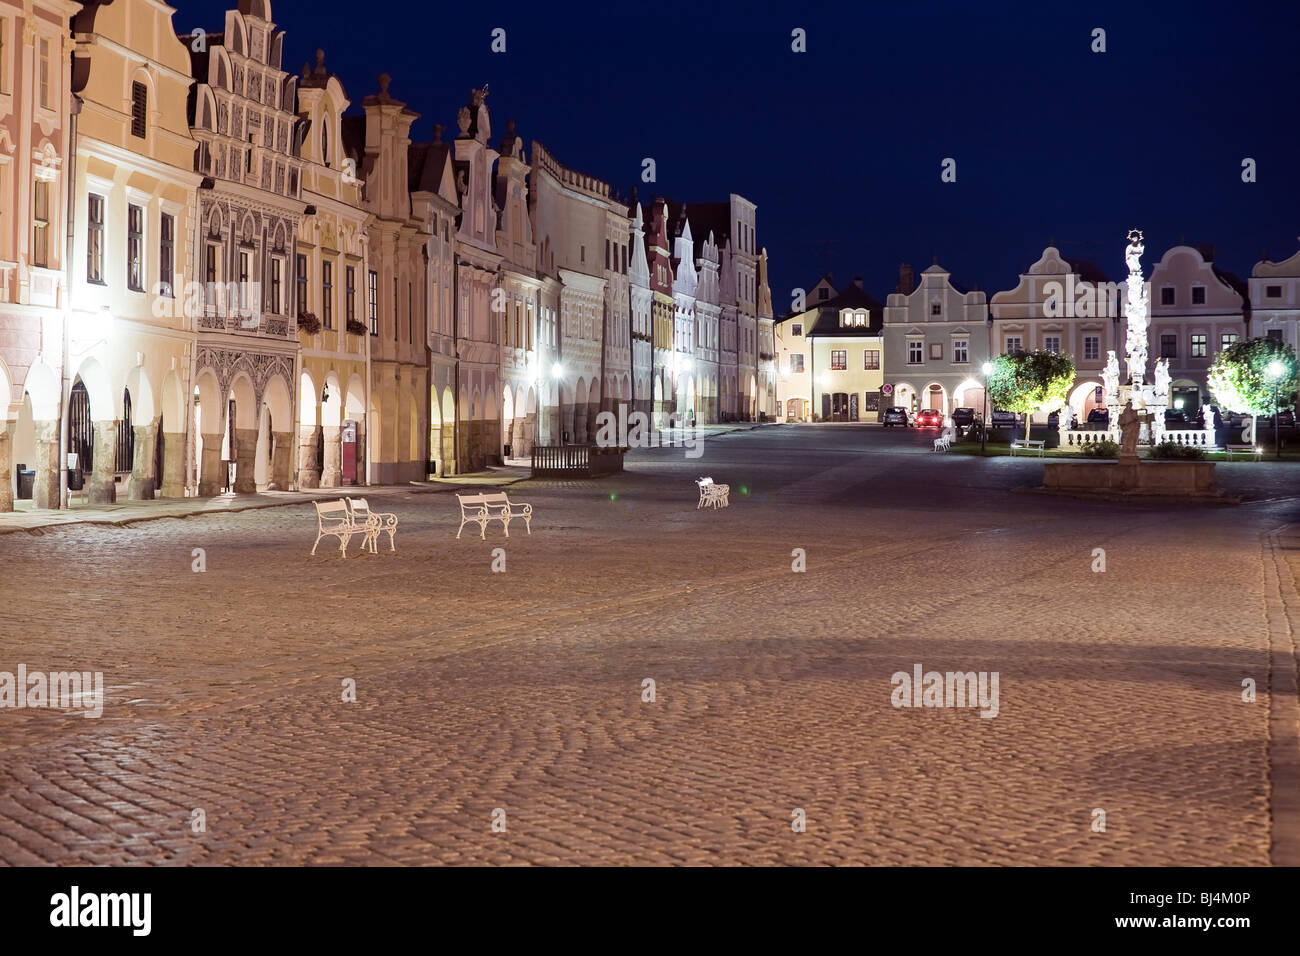 Beleuchteten Platz in Telc, Böhmen - Tschechien, mit leeren Bank während der Dämmerung. UNESCO geschützten Kulturerbes. Stockfoto